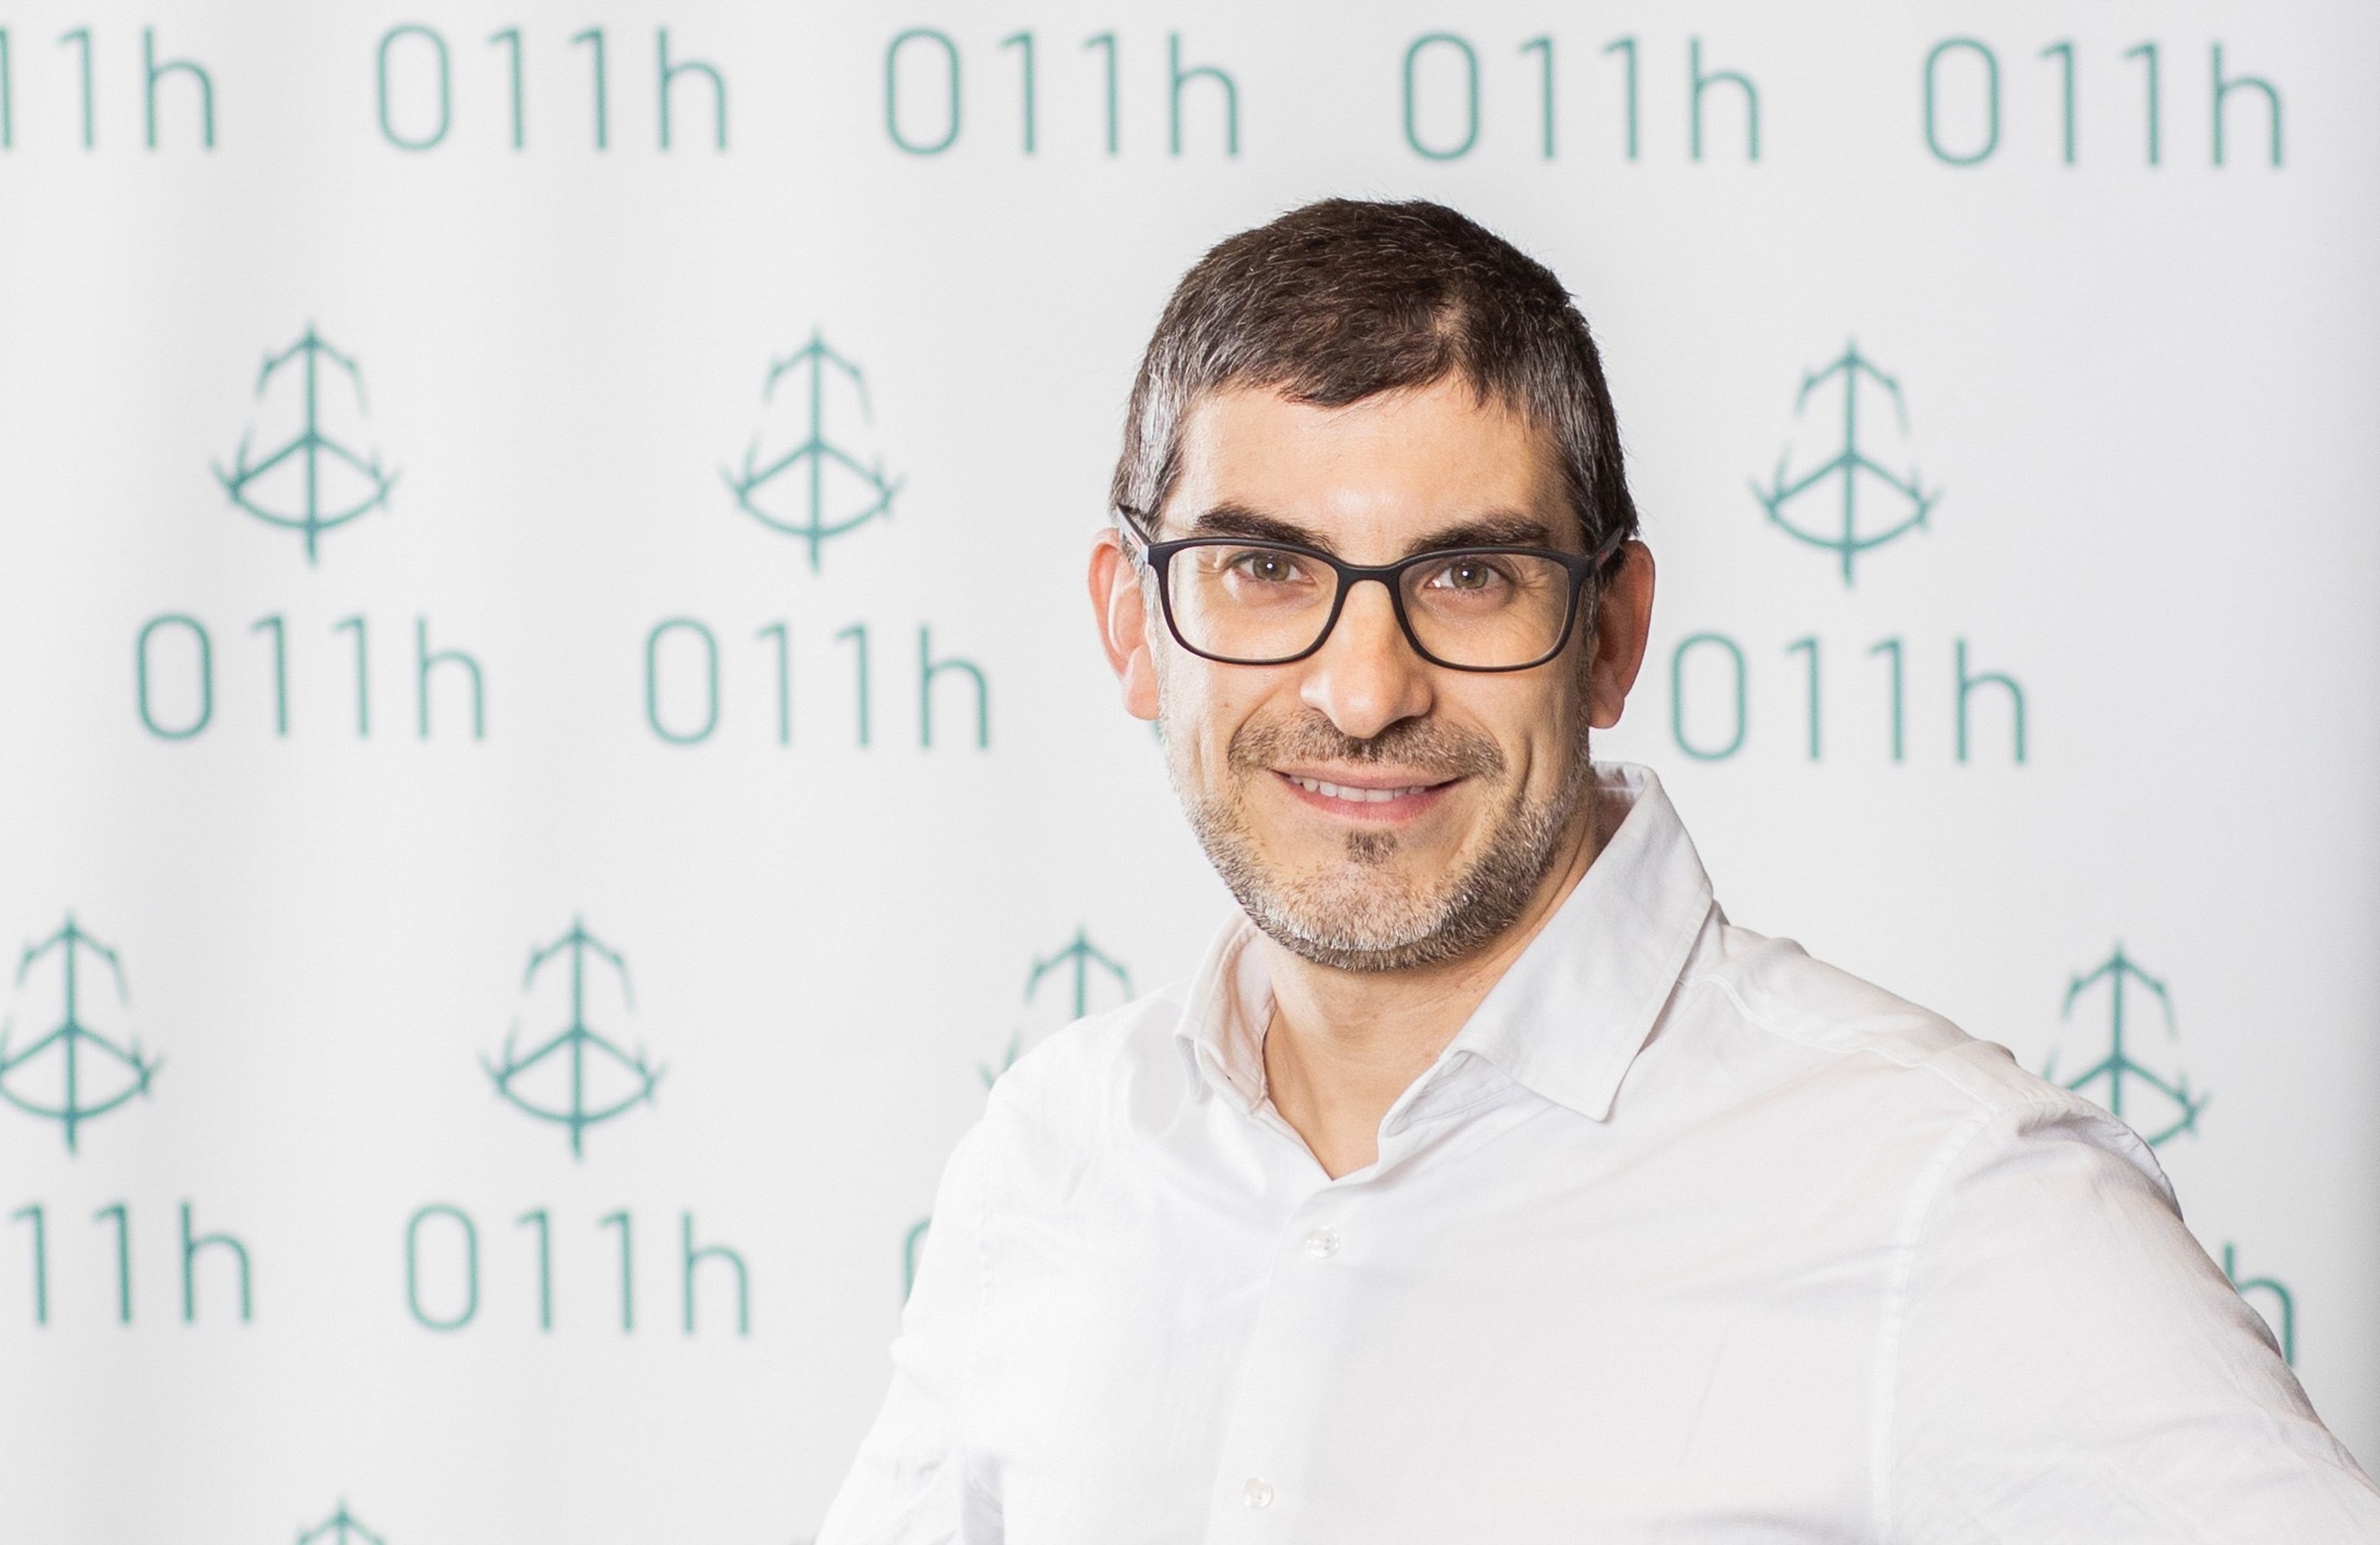 Josep Barberà, cofundador y director financiero de la constructora 011h.